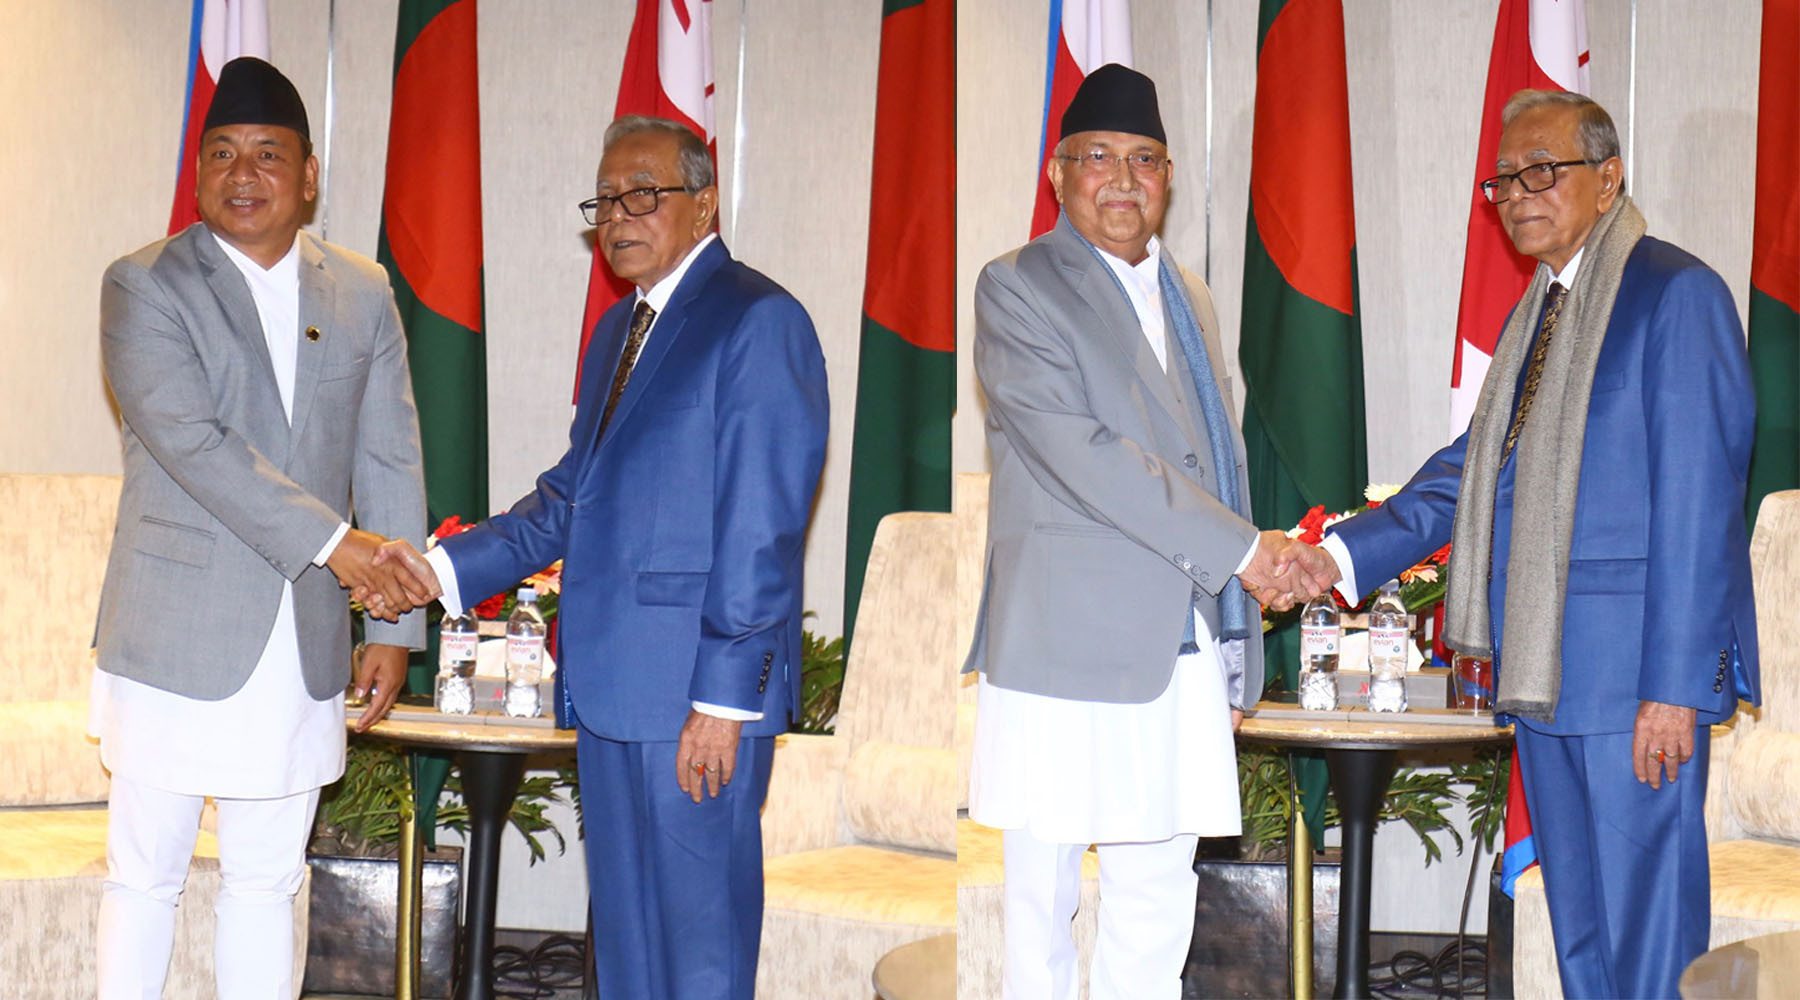 बङ्गलादेशी राष्ट्रपतिसँग उपराष्ट्रपति र प्रधानमन्त्रीको शिष्टाचार भेट, नेपालको समृद्धिमा बङ्गलादेशले सघाउने